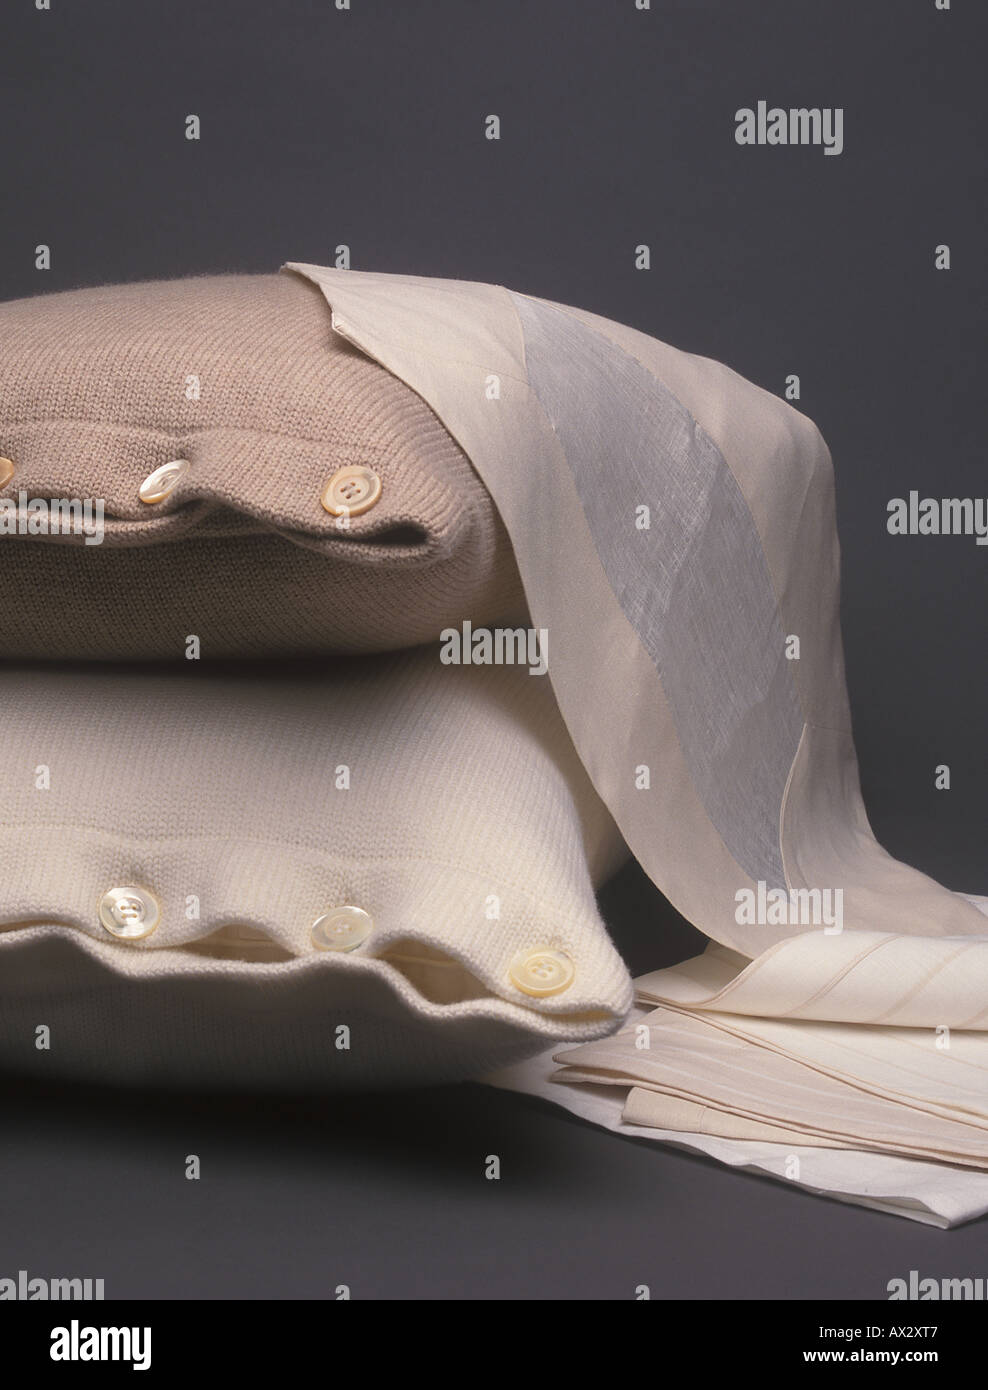 Luxus Haushaltswaren Produkte auf einem dunklen Hintergrund, darunter zwei Kissen und eine Auswahl der Stichprobe Tücher Stockfoto